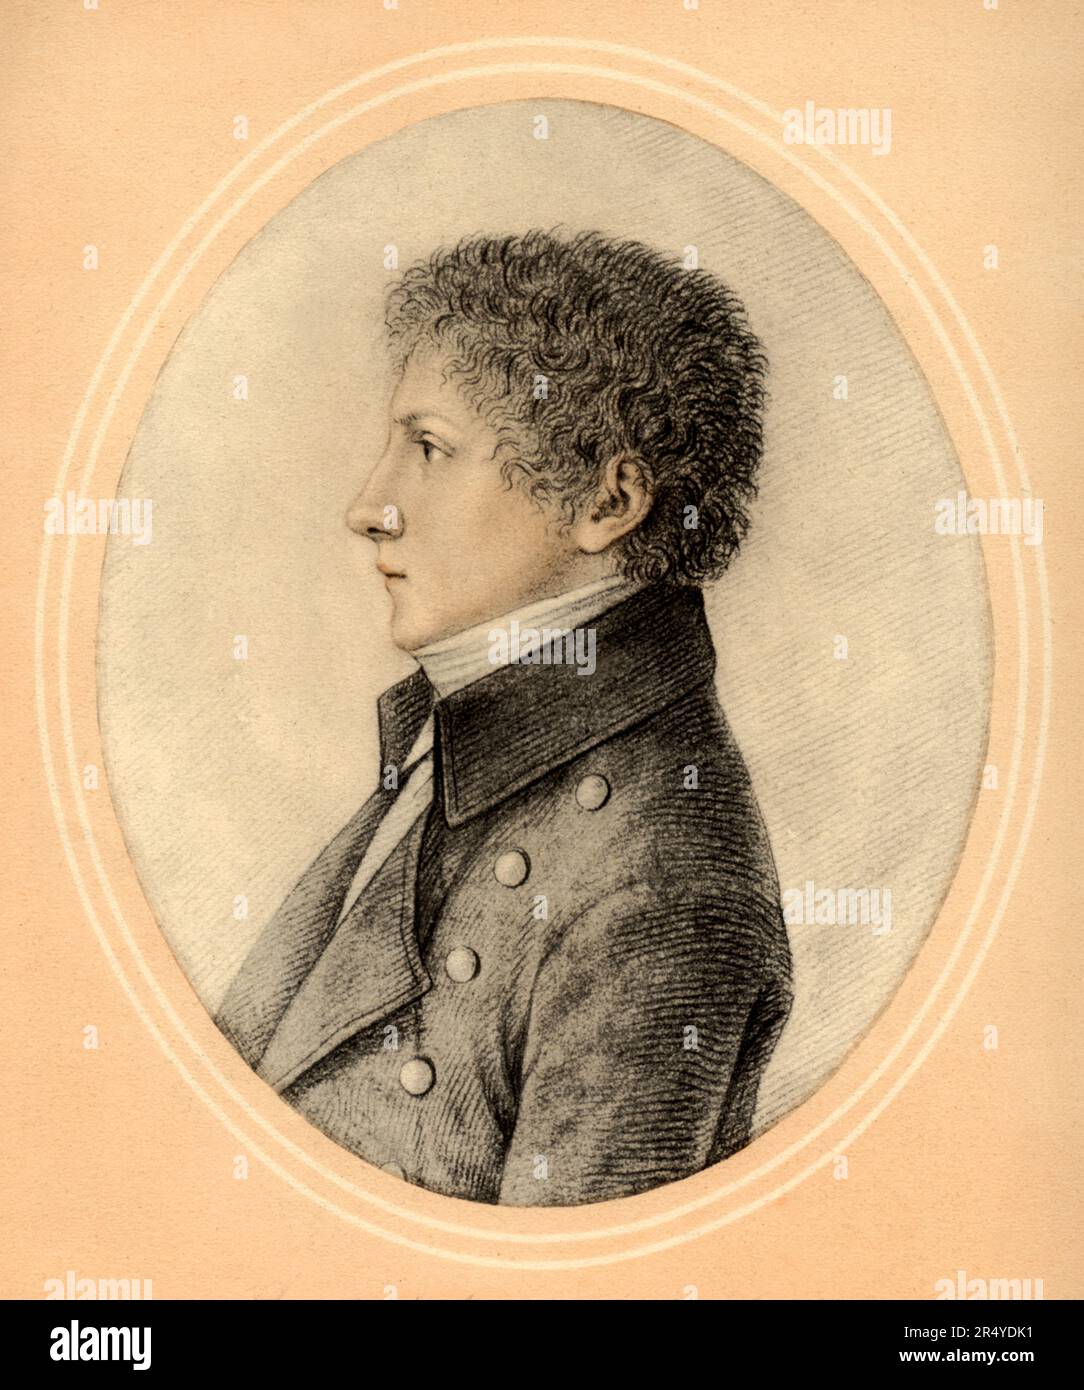 1802 , Milano , ITALIA : il celebre scrittore e poeta italiano ALESSANDRO MANZONI ( 1785 - 1873 ) di 17 anni . Ritratto del pittore GAUDENZIO BORDIGA ( 1773 - 1837 ) . - POETA - POESIA - POESIA - POESIA - SCRITTORE - LETTERATO - LETTERATURA - LETTERATURA - RITRATTO - PROFILO --- ARCHIVIO GBB Foto Stock